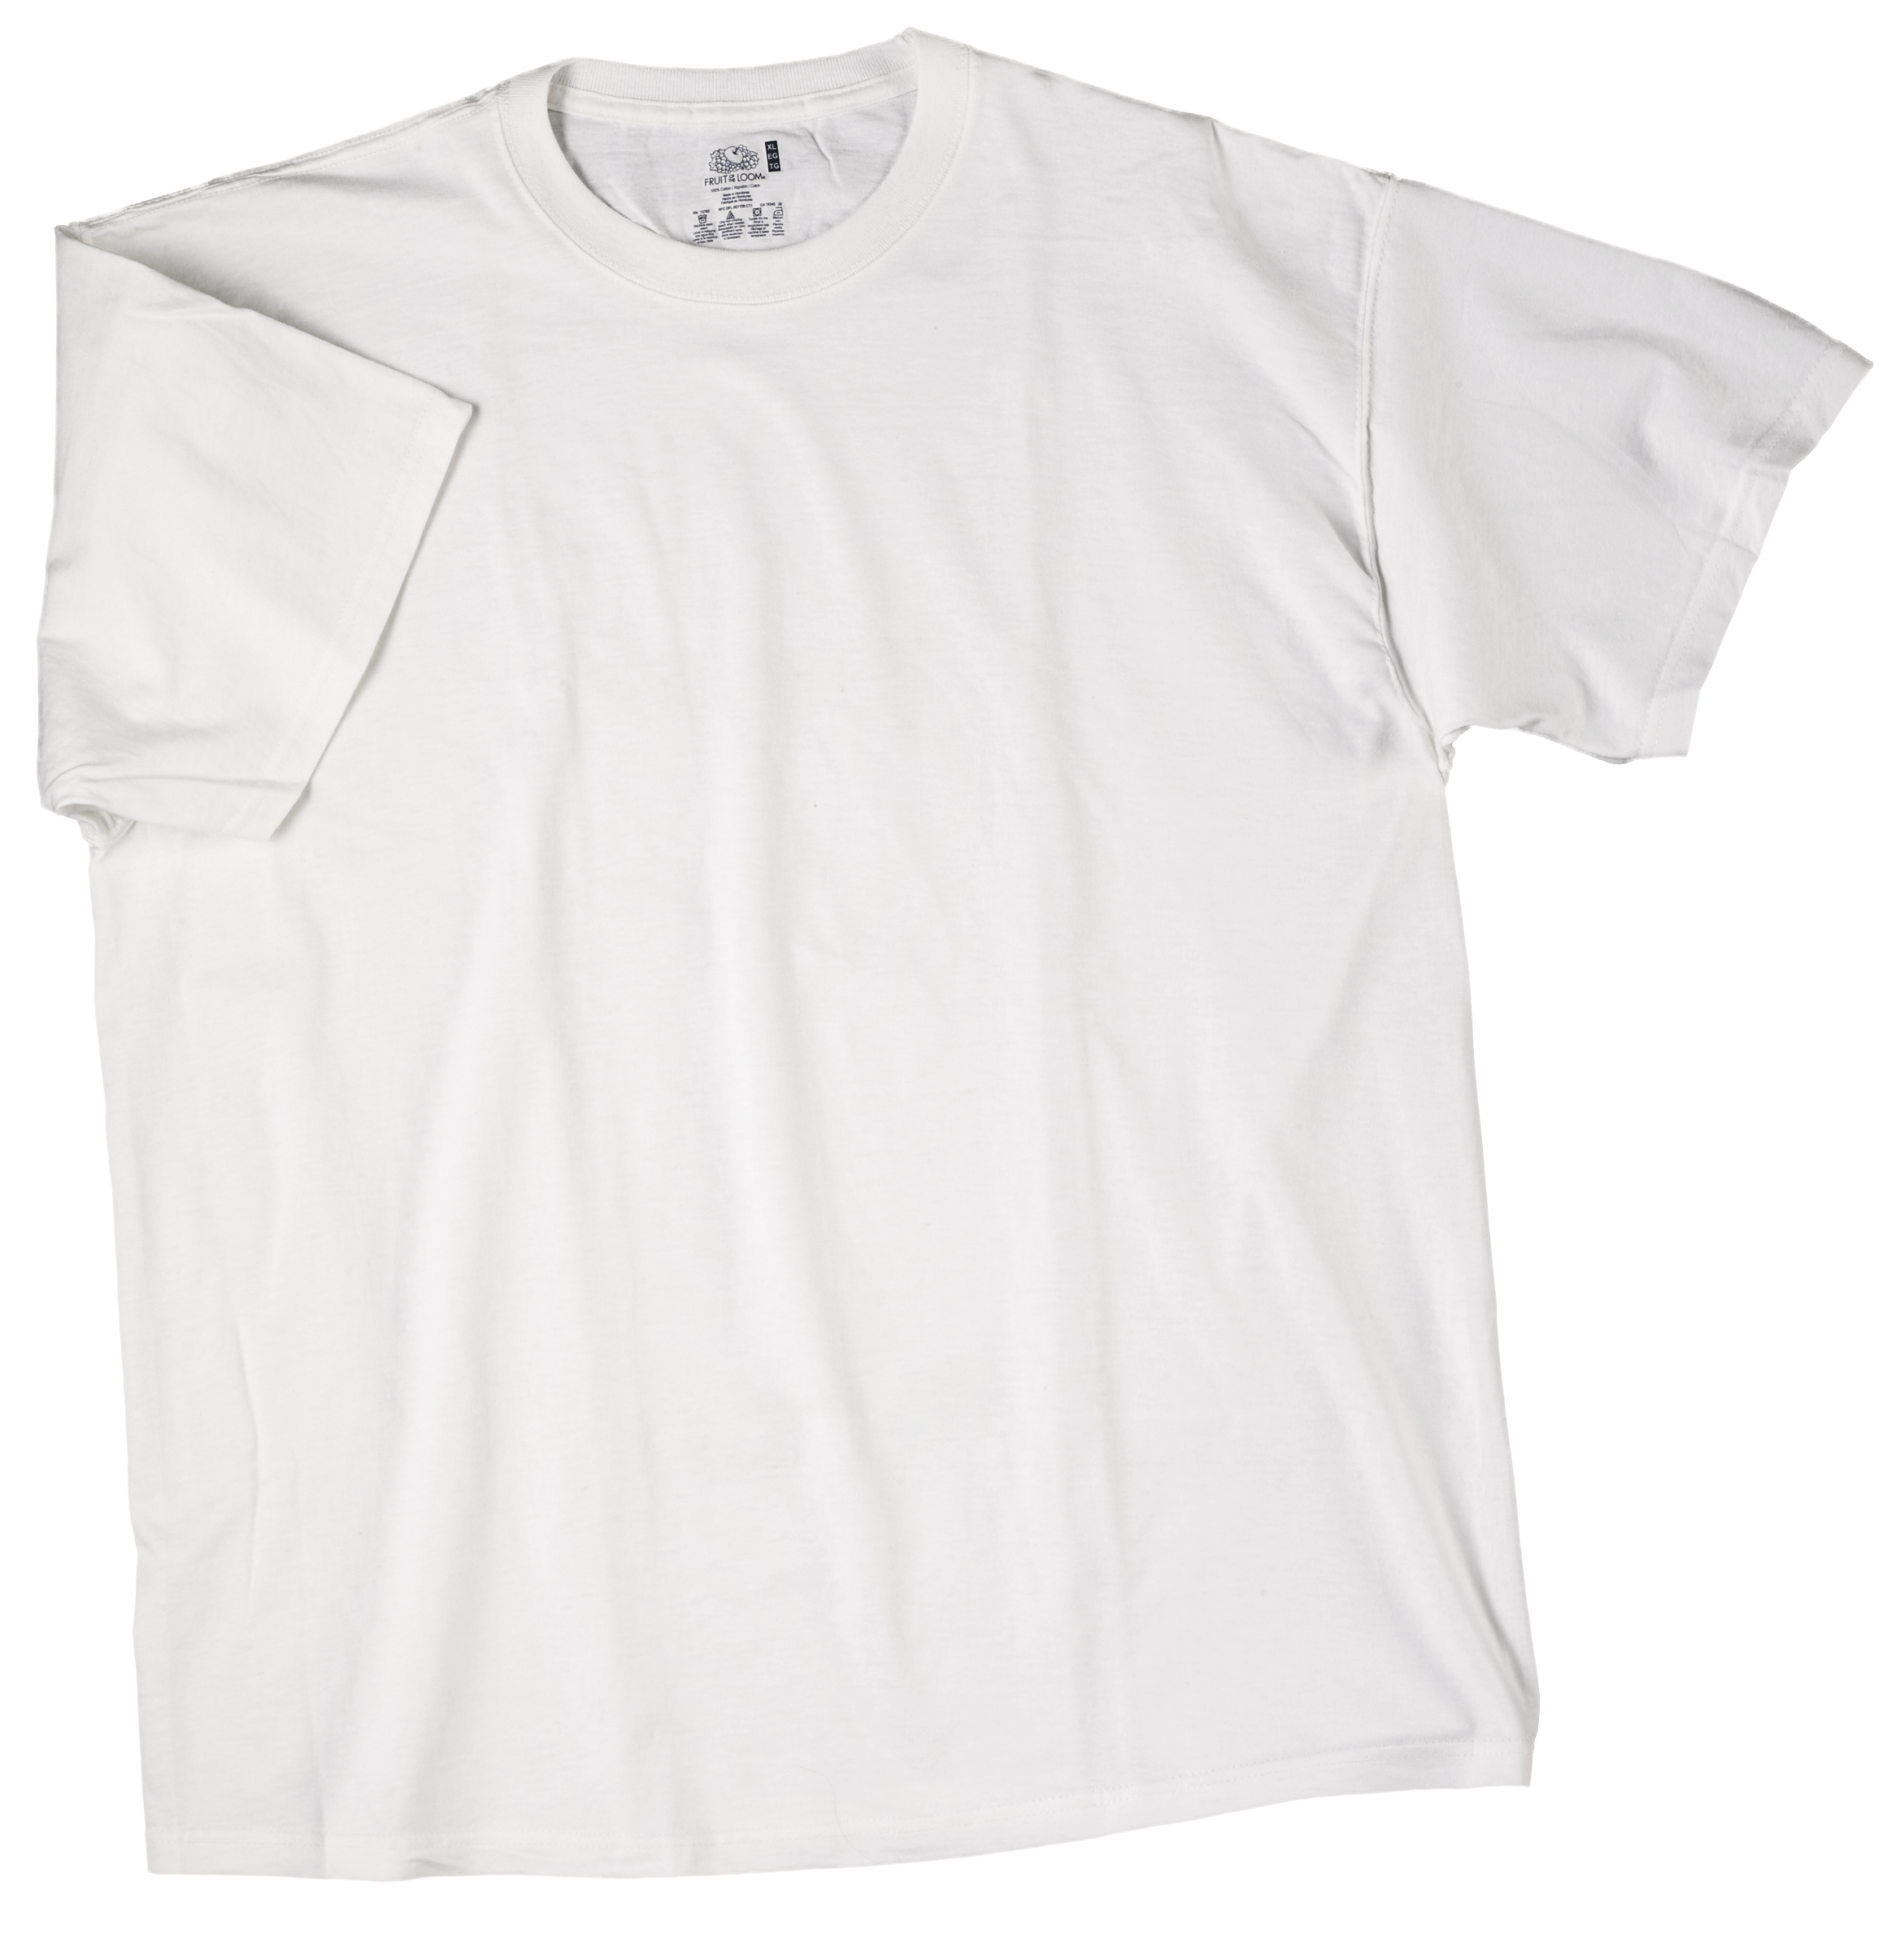 KMS White Tee Shirt